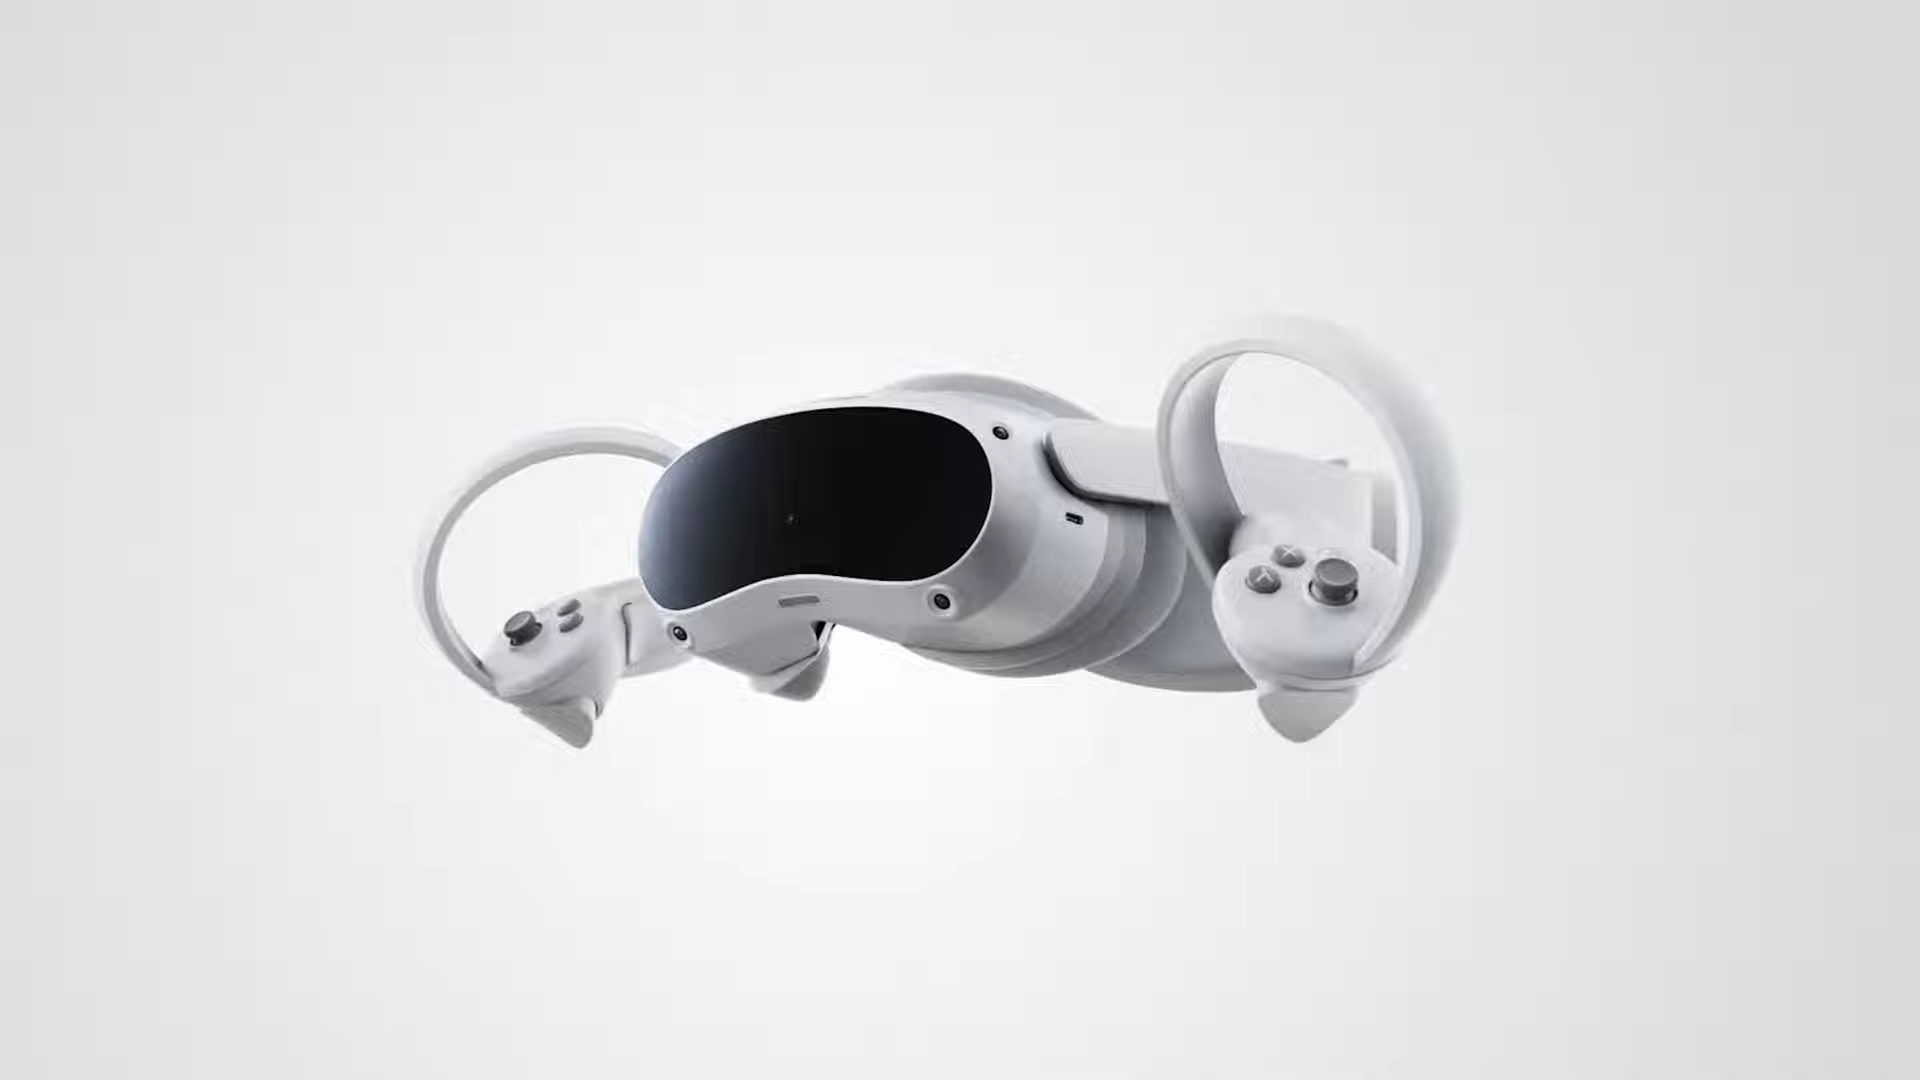 Pico của ByteDance tiết lộ tai nghe VR mới nhất của mình vì nó nhằm mục đích cạnh tranh với Meta Quest 2